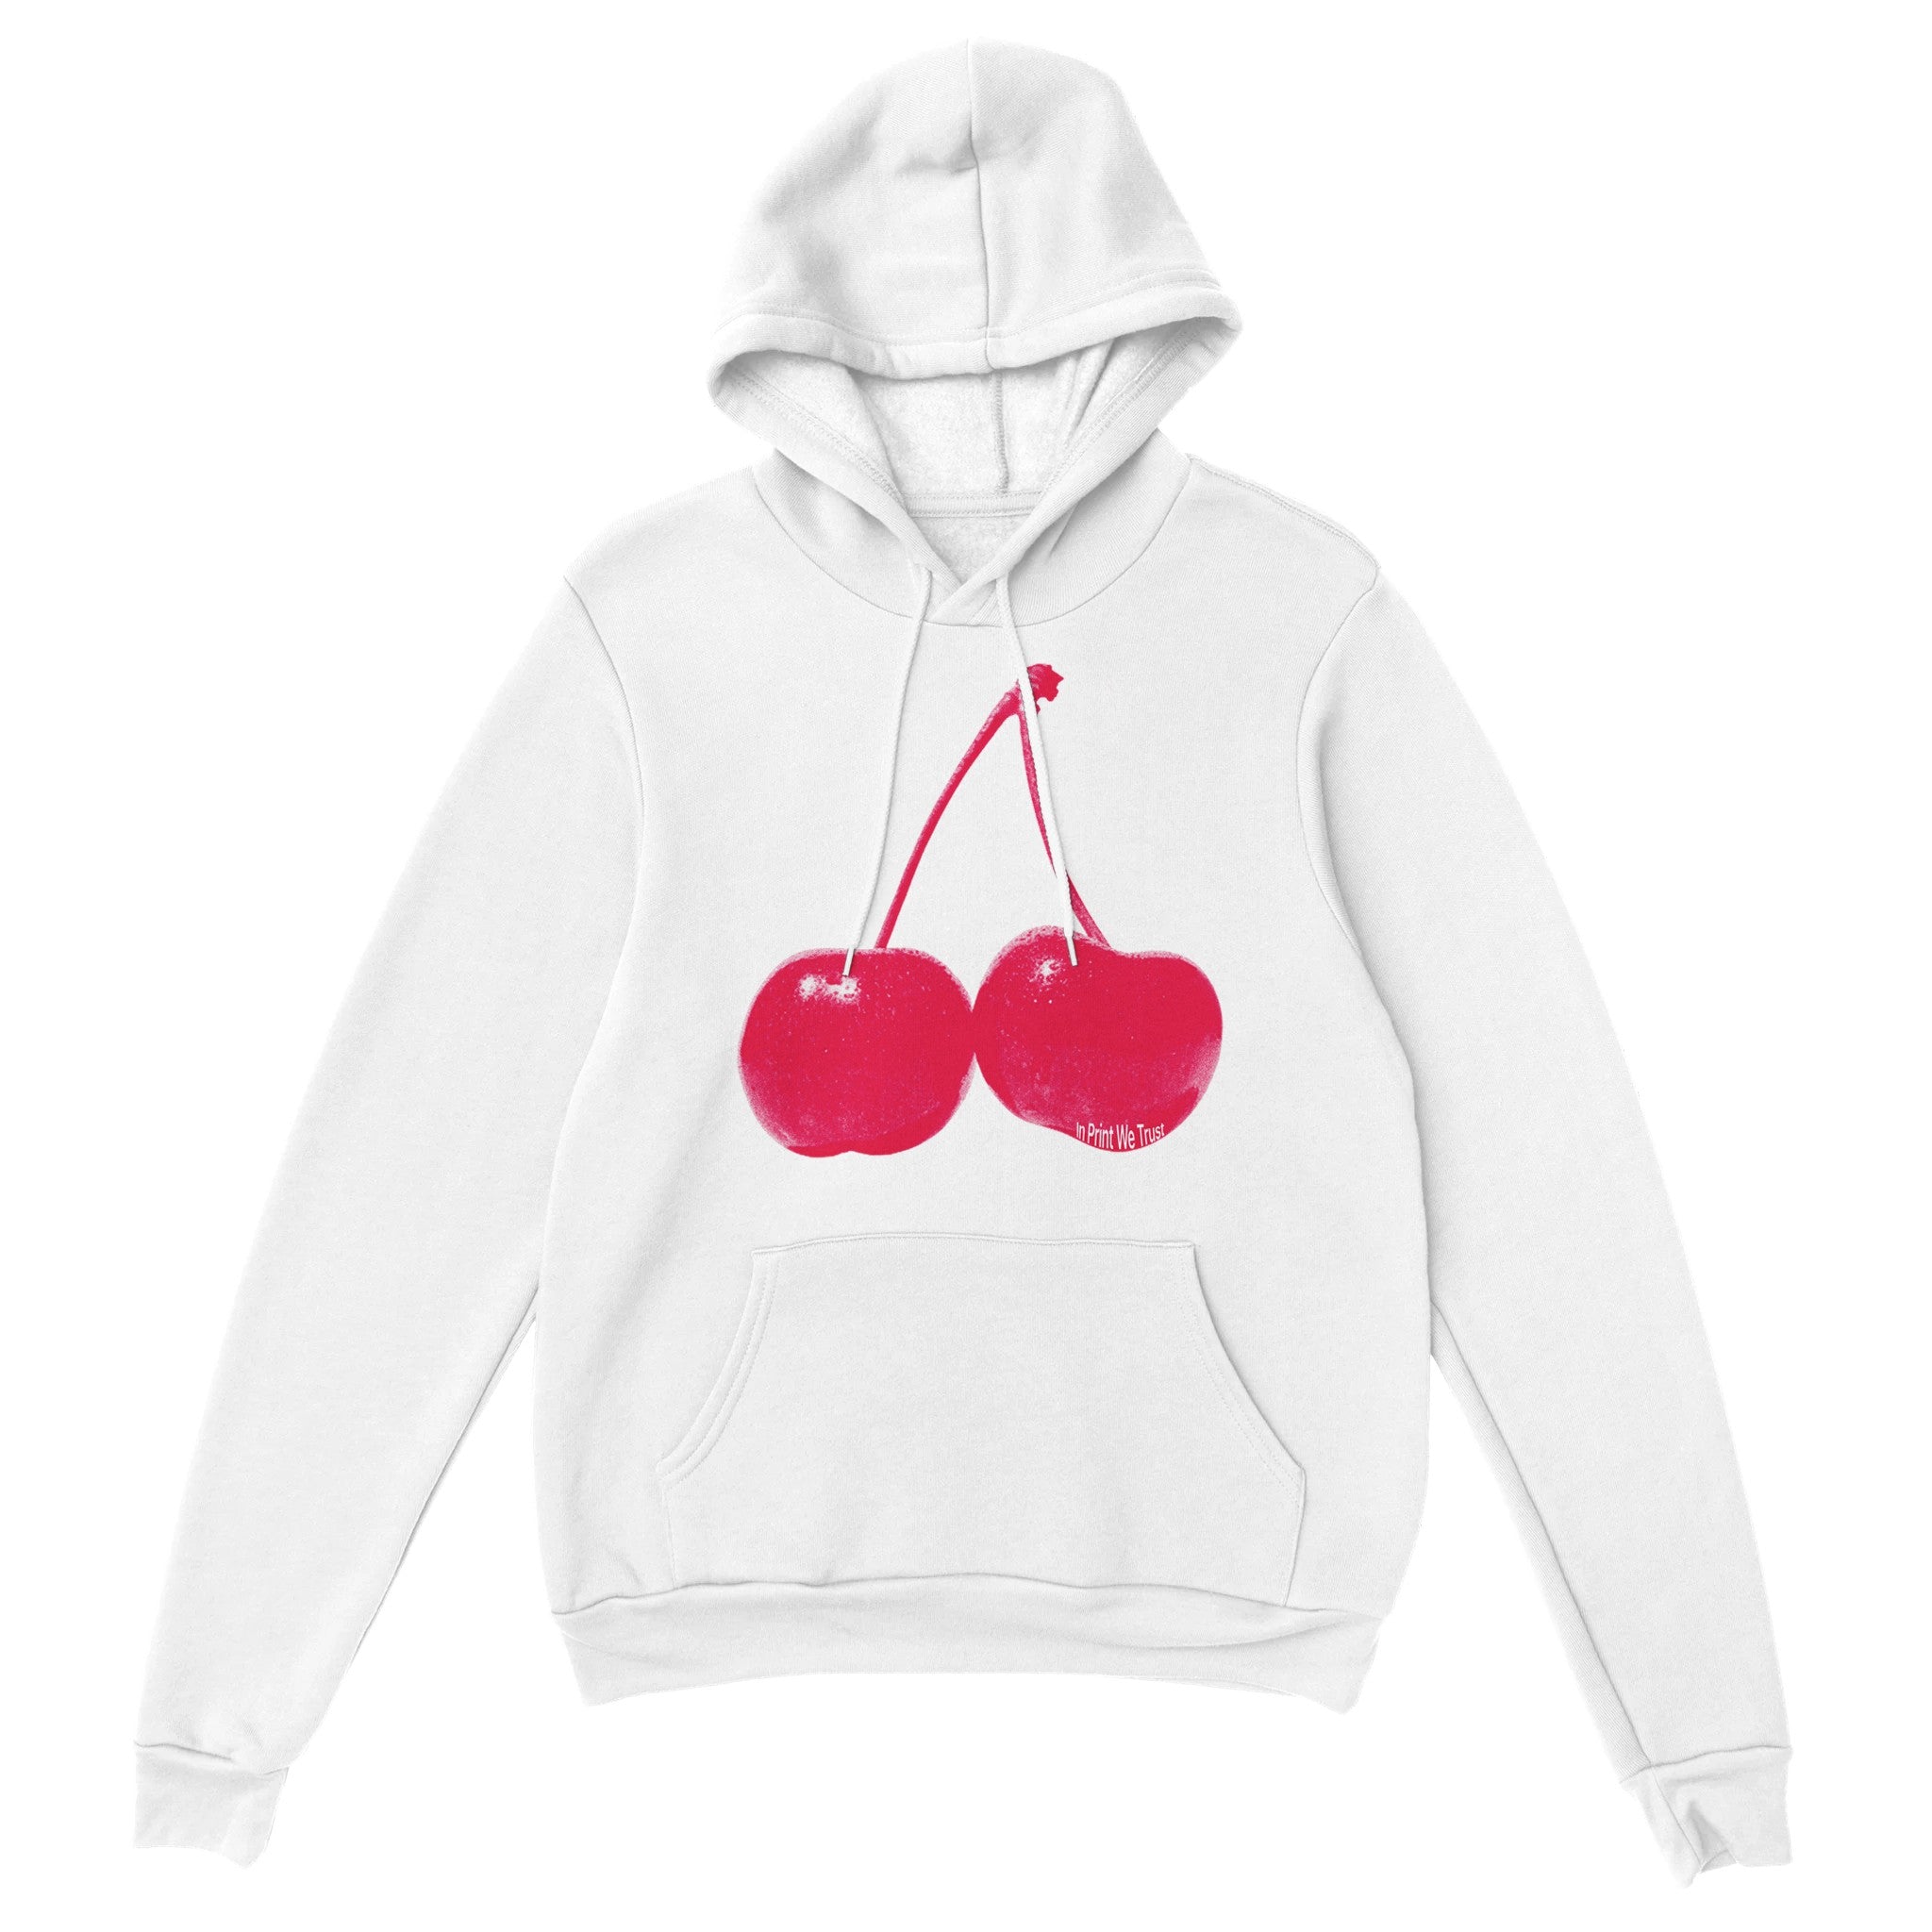 'Cherry' hoodie